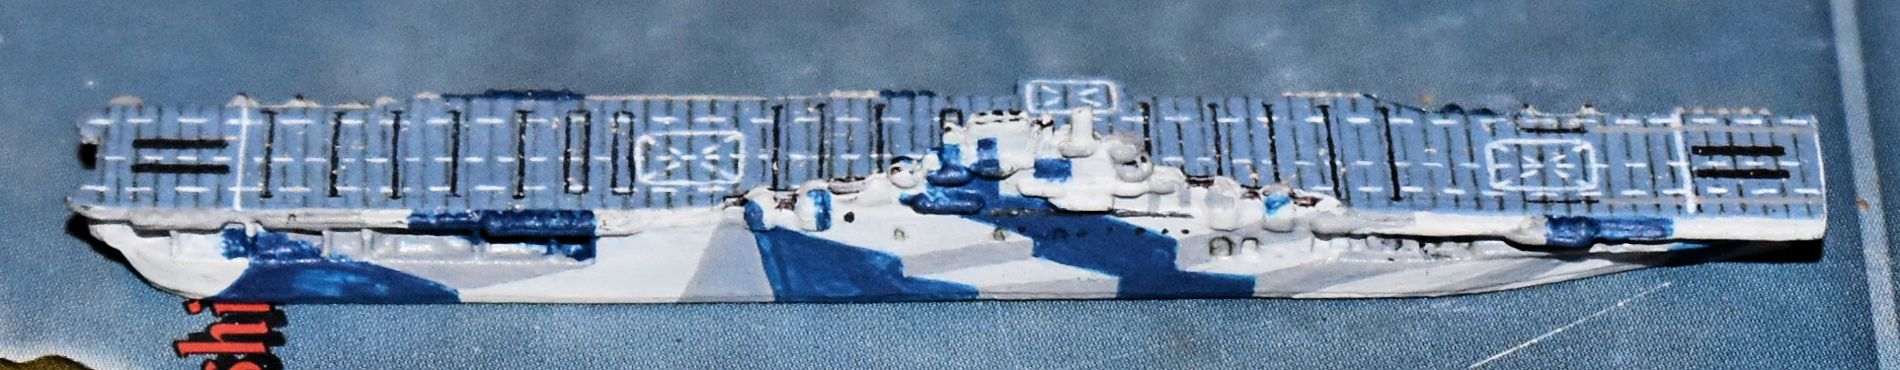 DSC_0030-USS Intrepid (CV-11).jpg